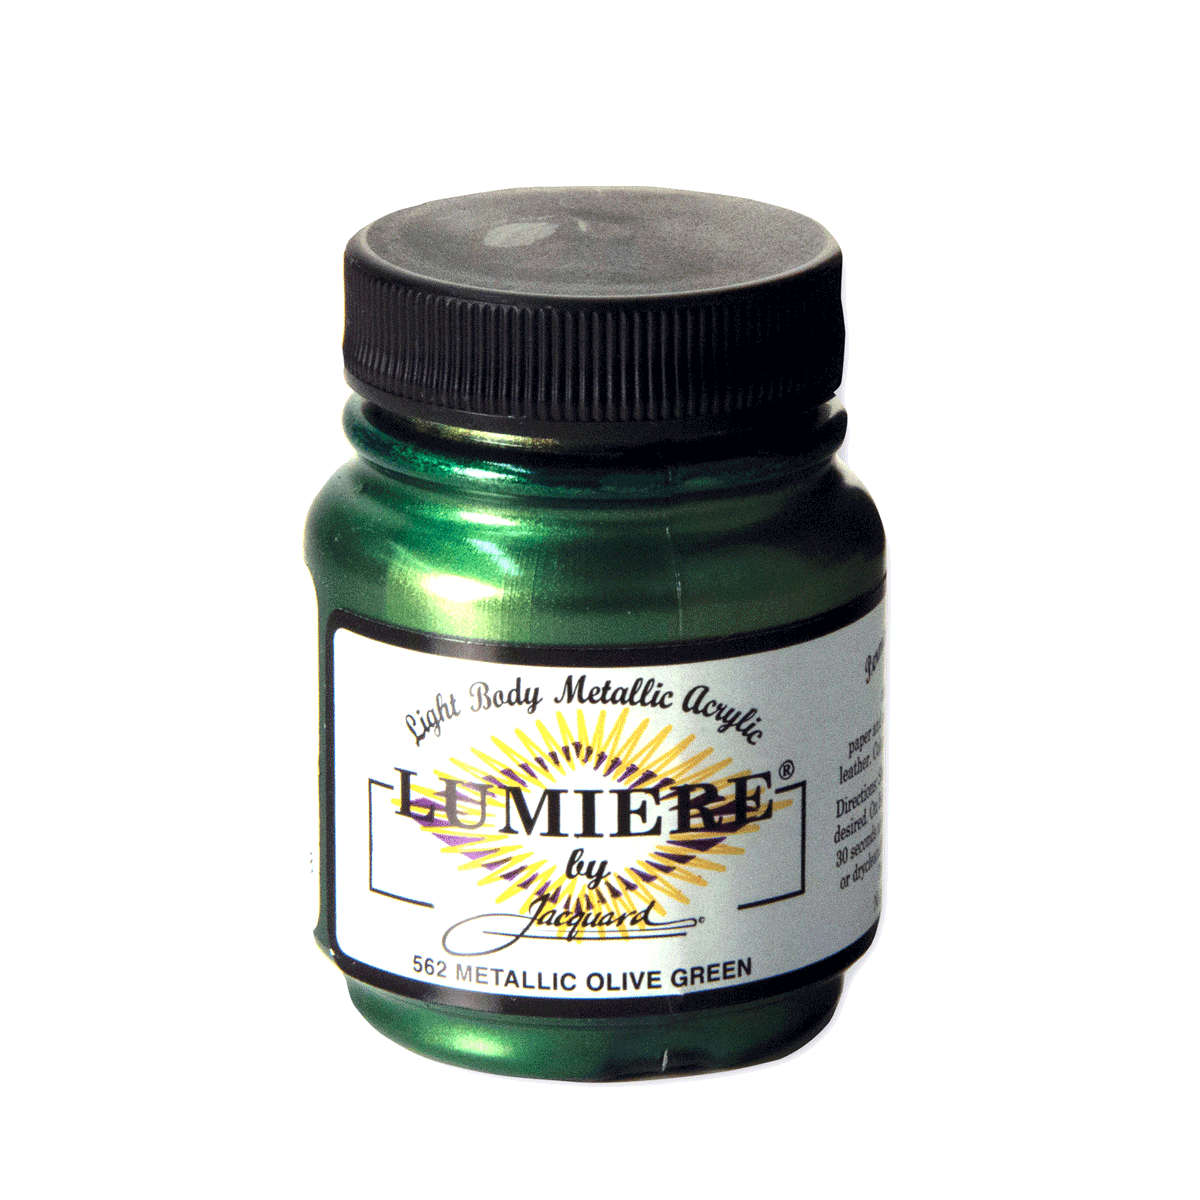 Jacquard Lumiere 562 Metallic Olive Green 2.25-oz Jar